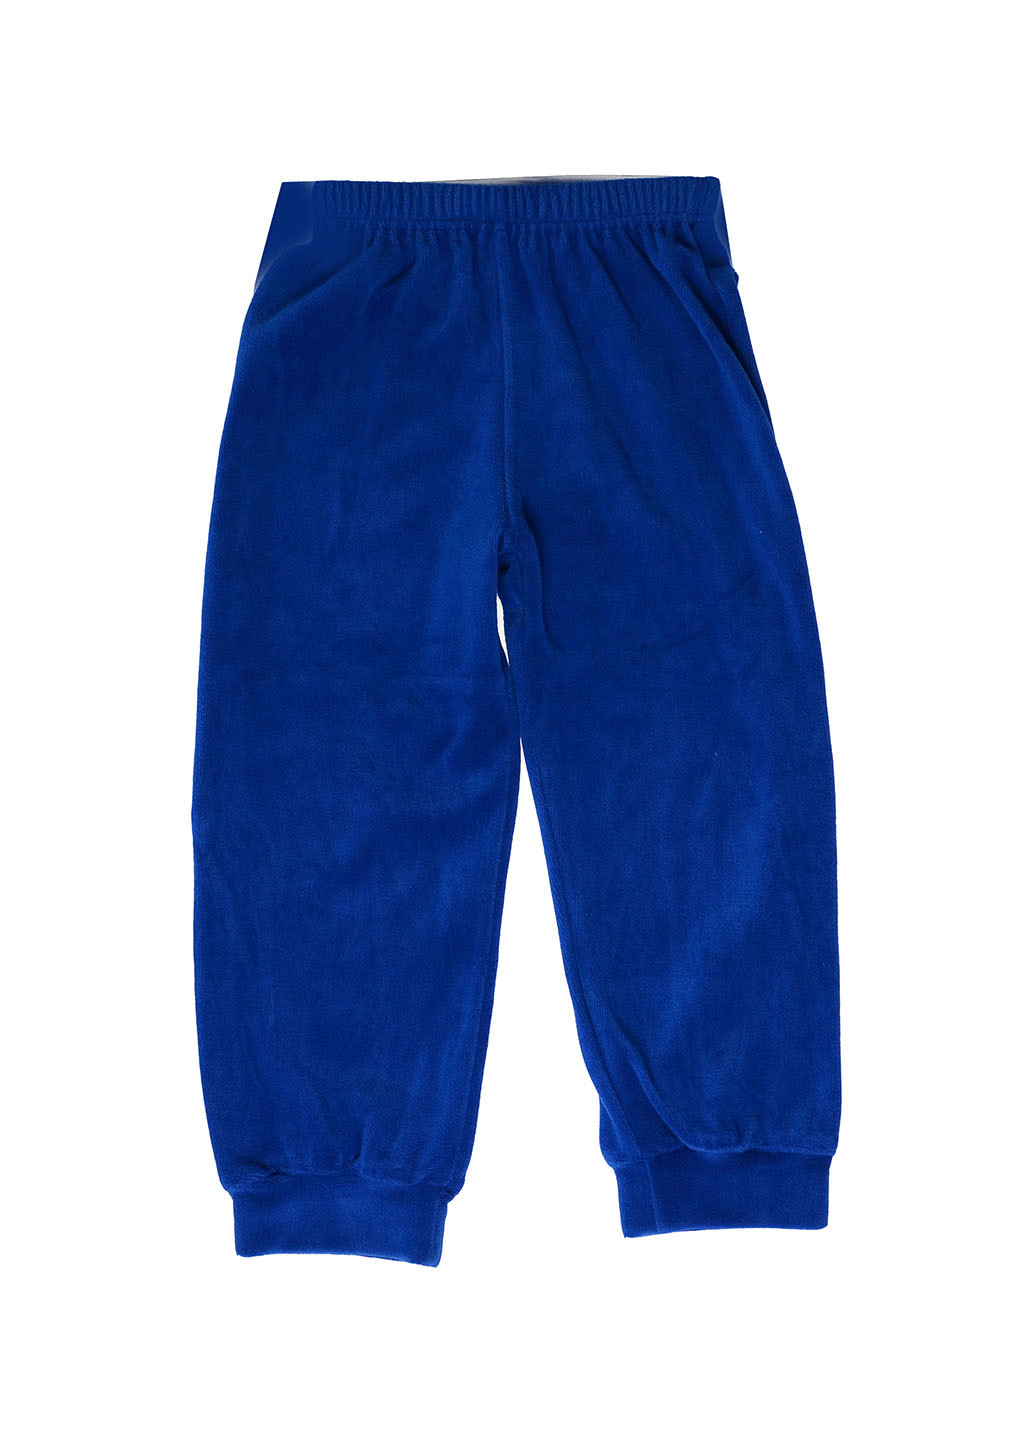 Синие спортивные демисезонные брюки прямые Татошка